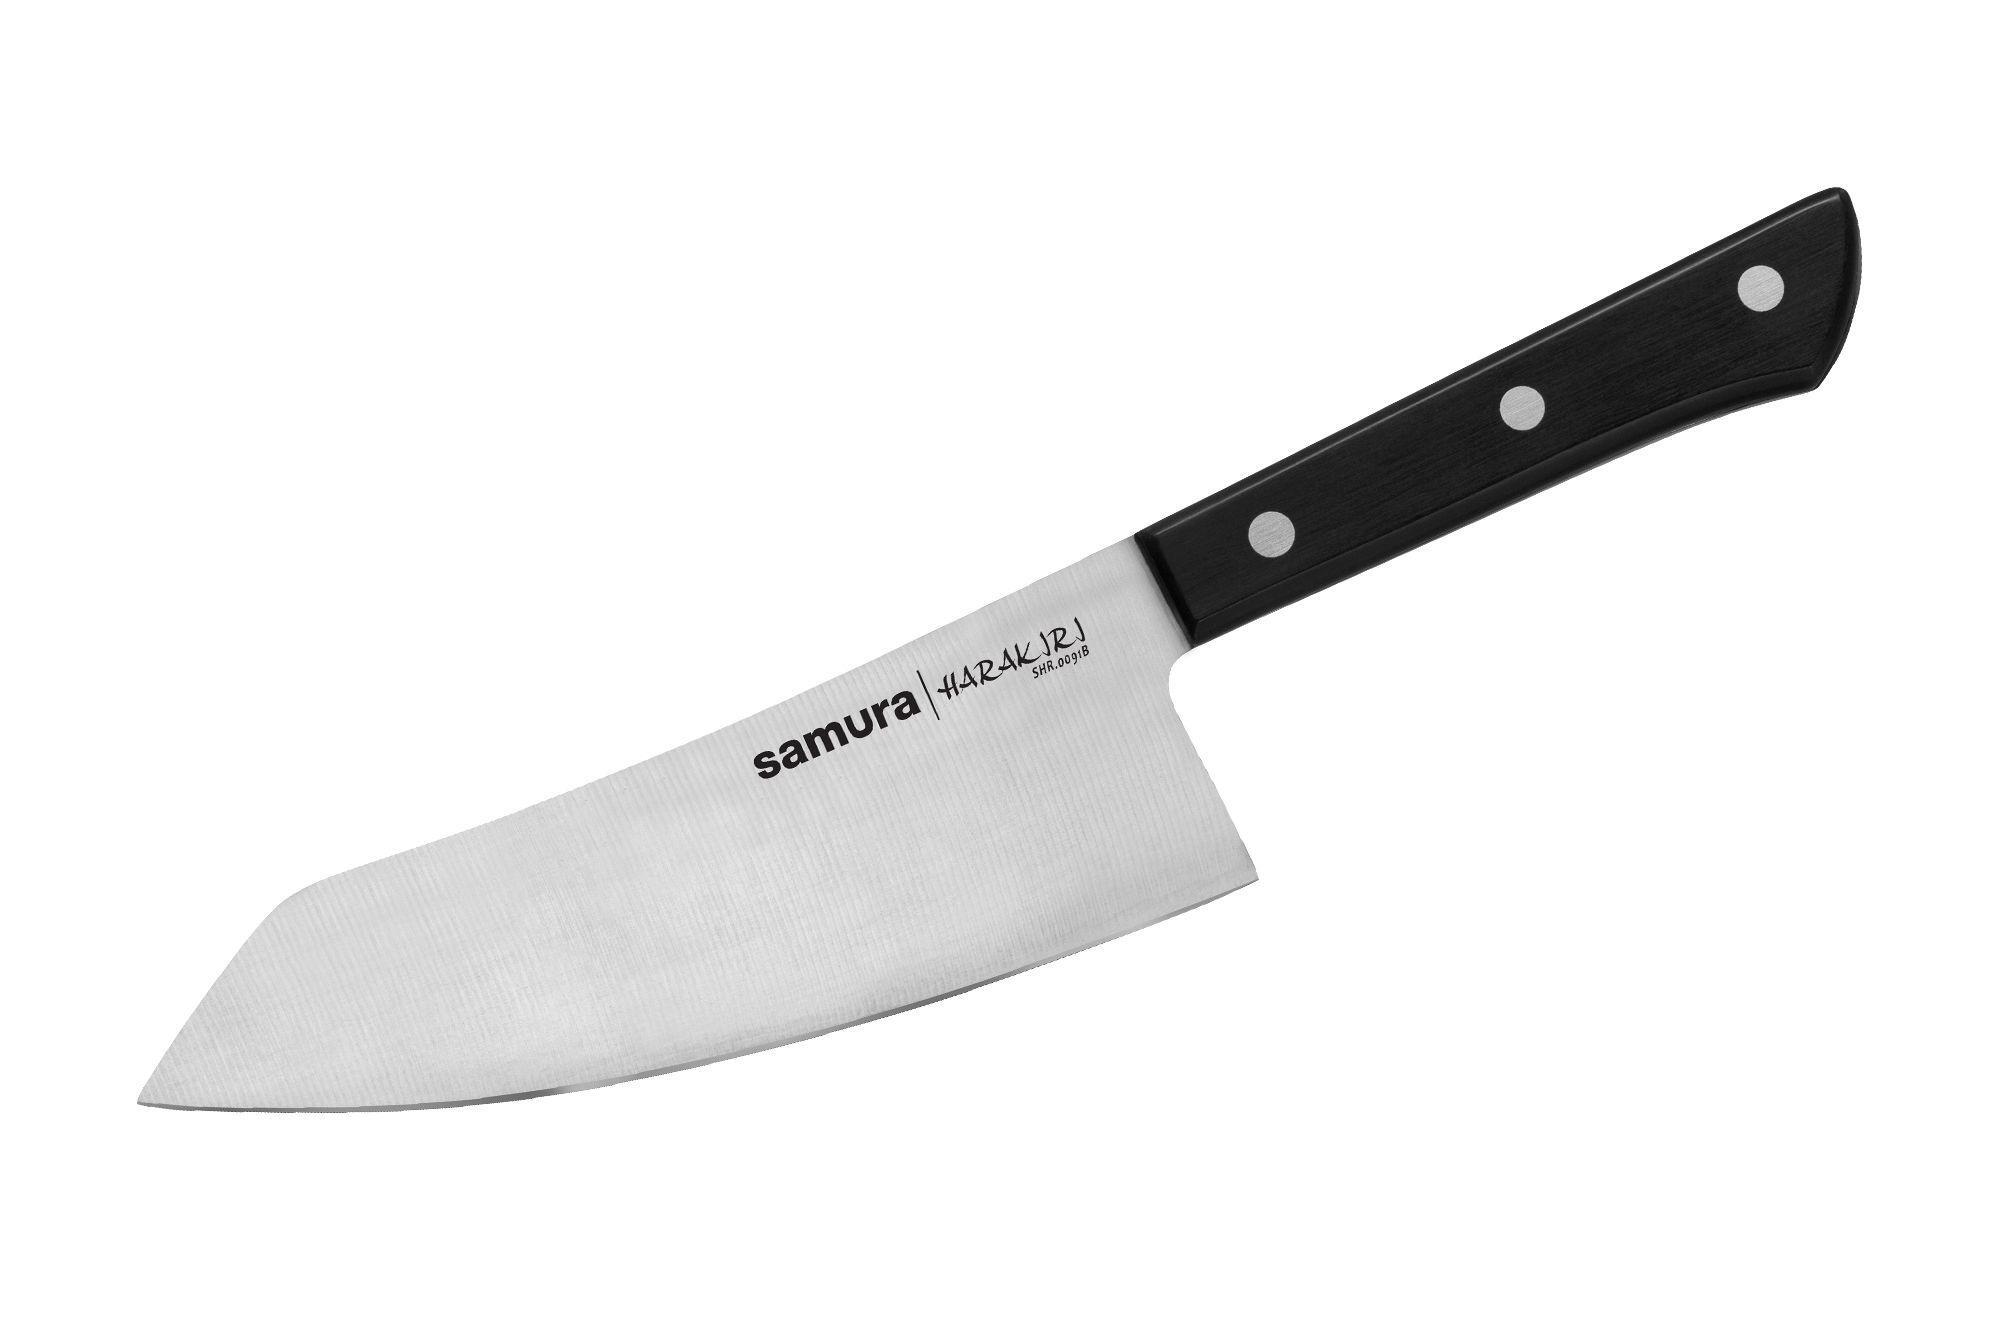 Купить ножи chef. Нож Samura Harakiri SHR-0095b. Нож Samura mo-v Накири, 167 мм. Нож Samura Harakiri SHR-0024b. Нож шеф Samura Harakiri.